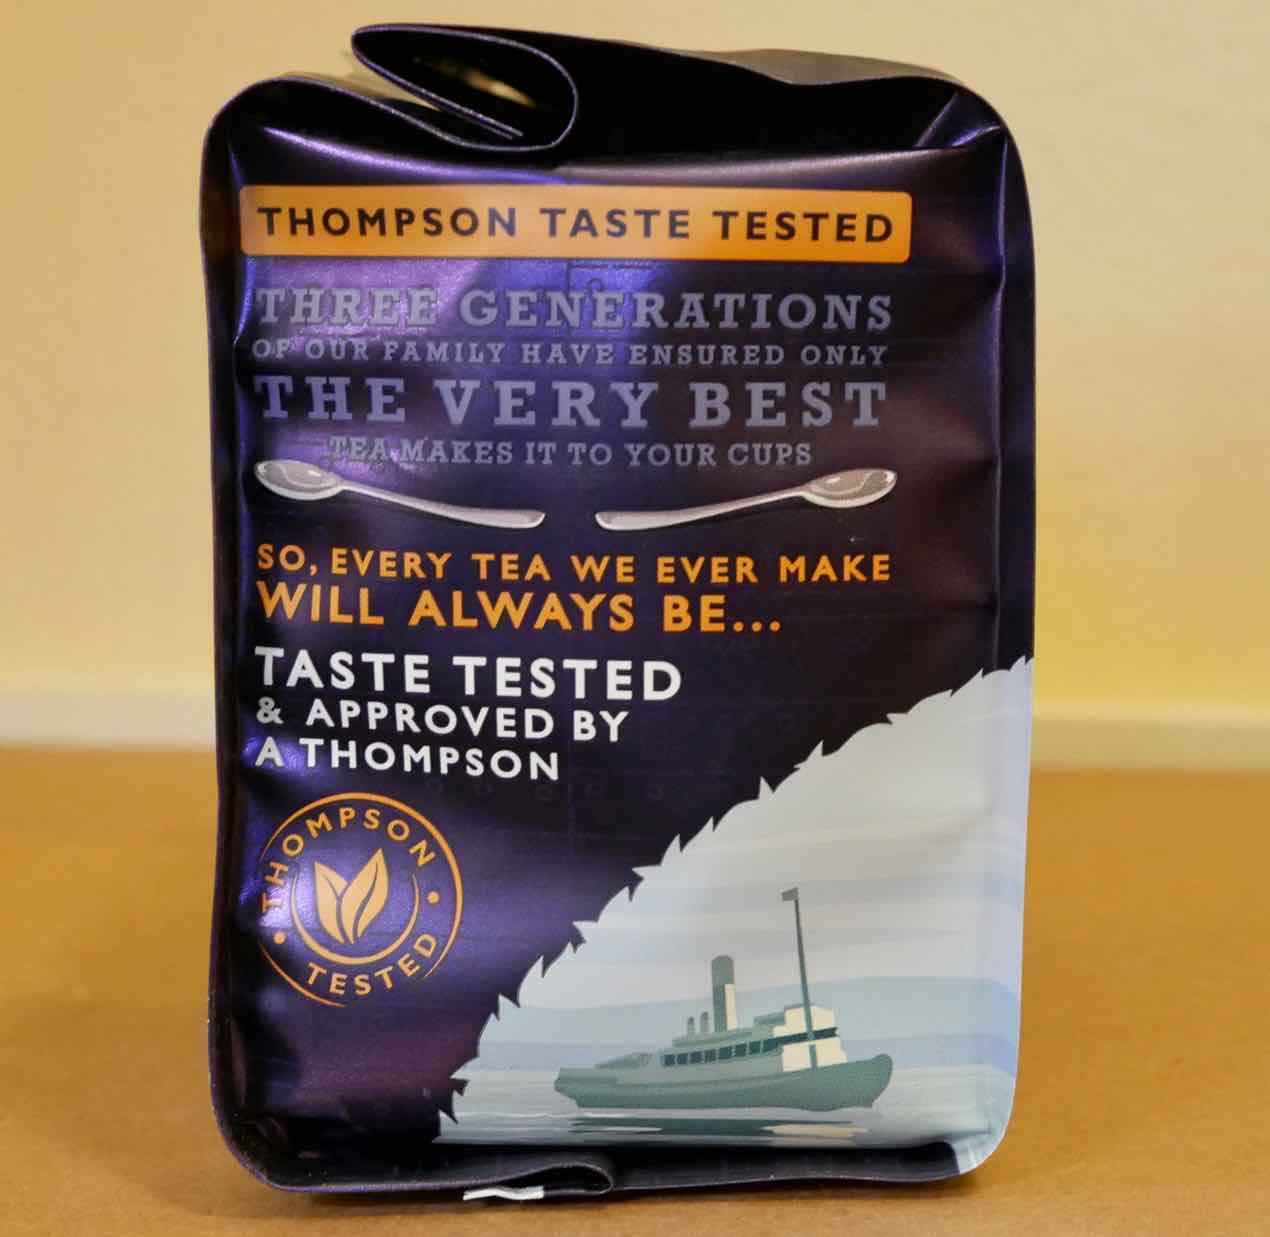 Titanic Tea package side